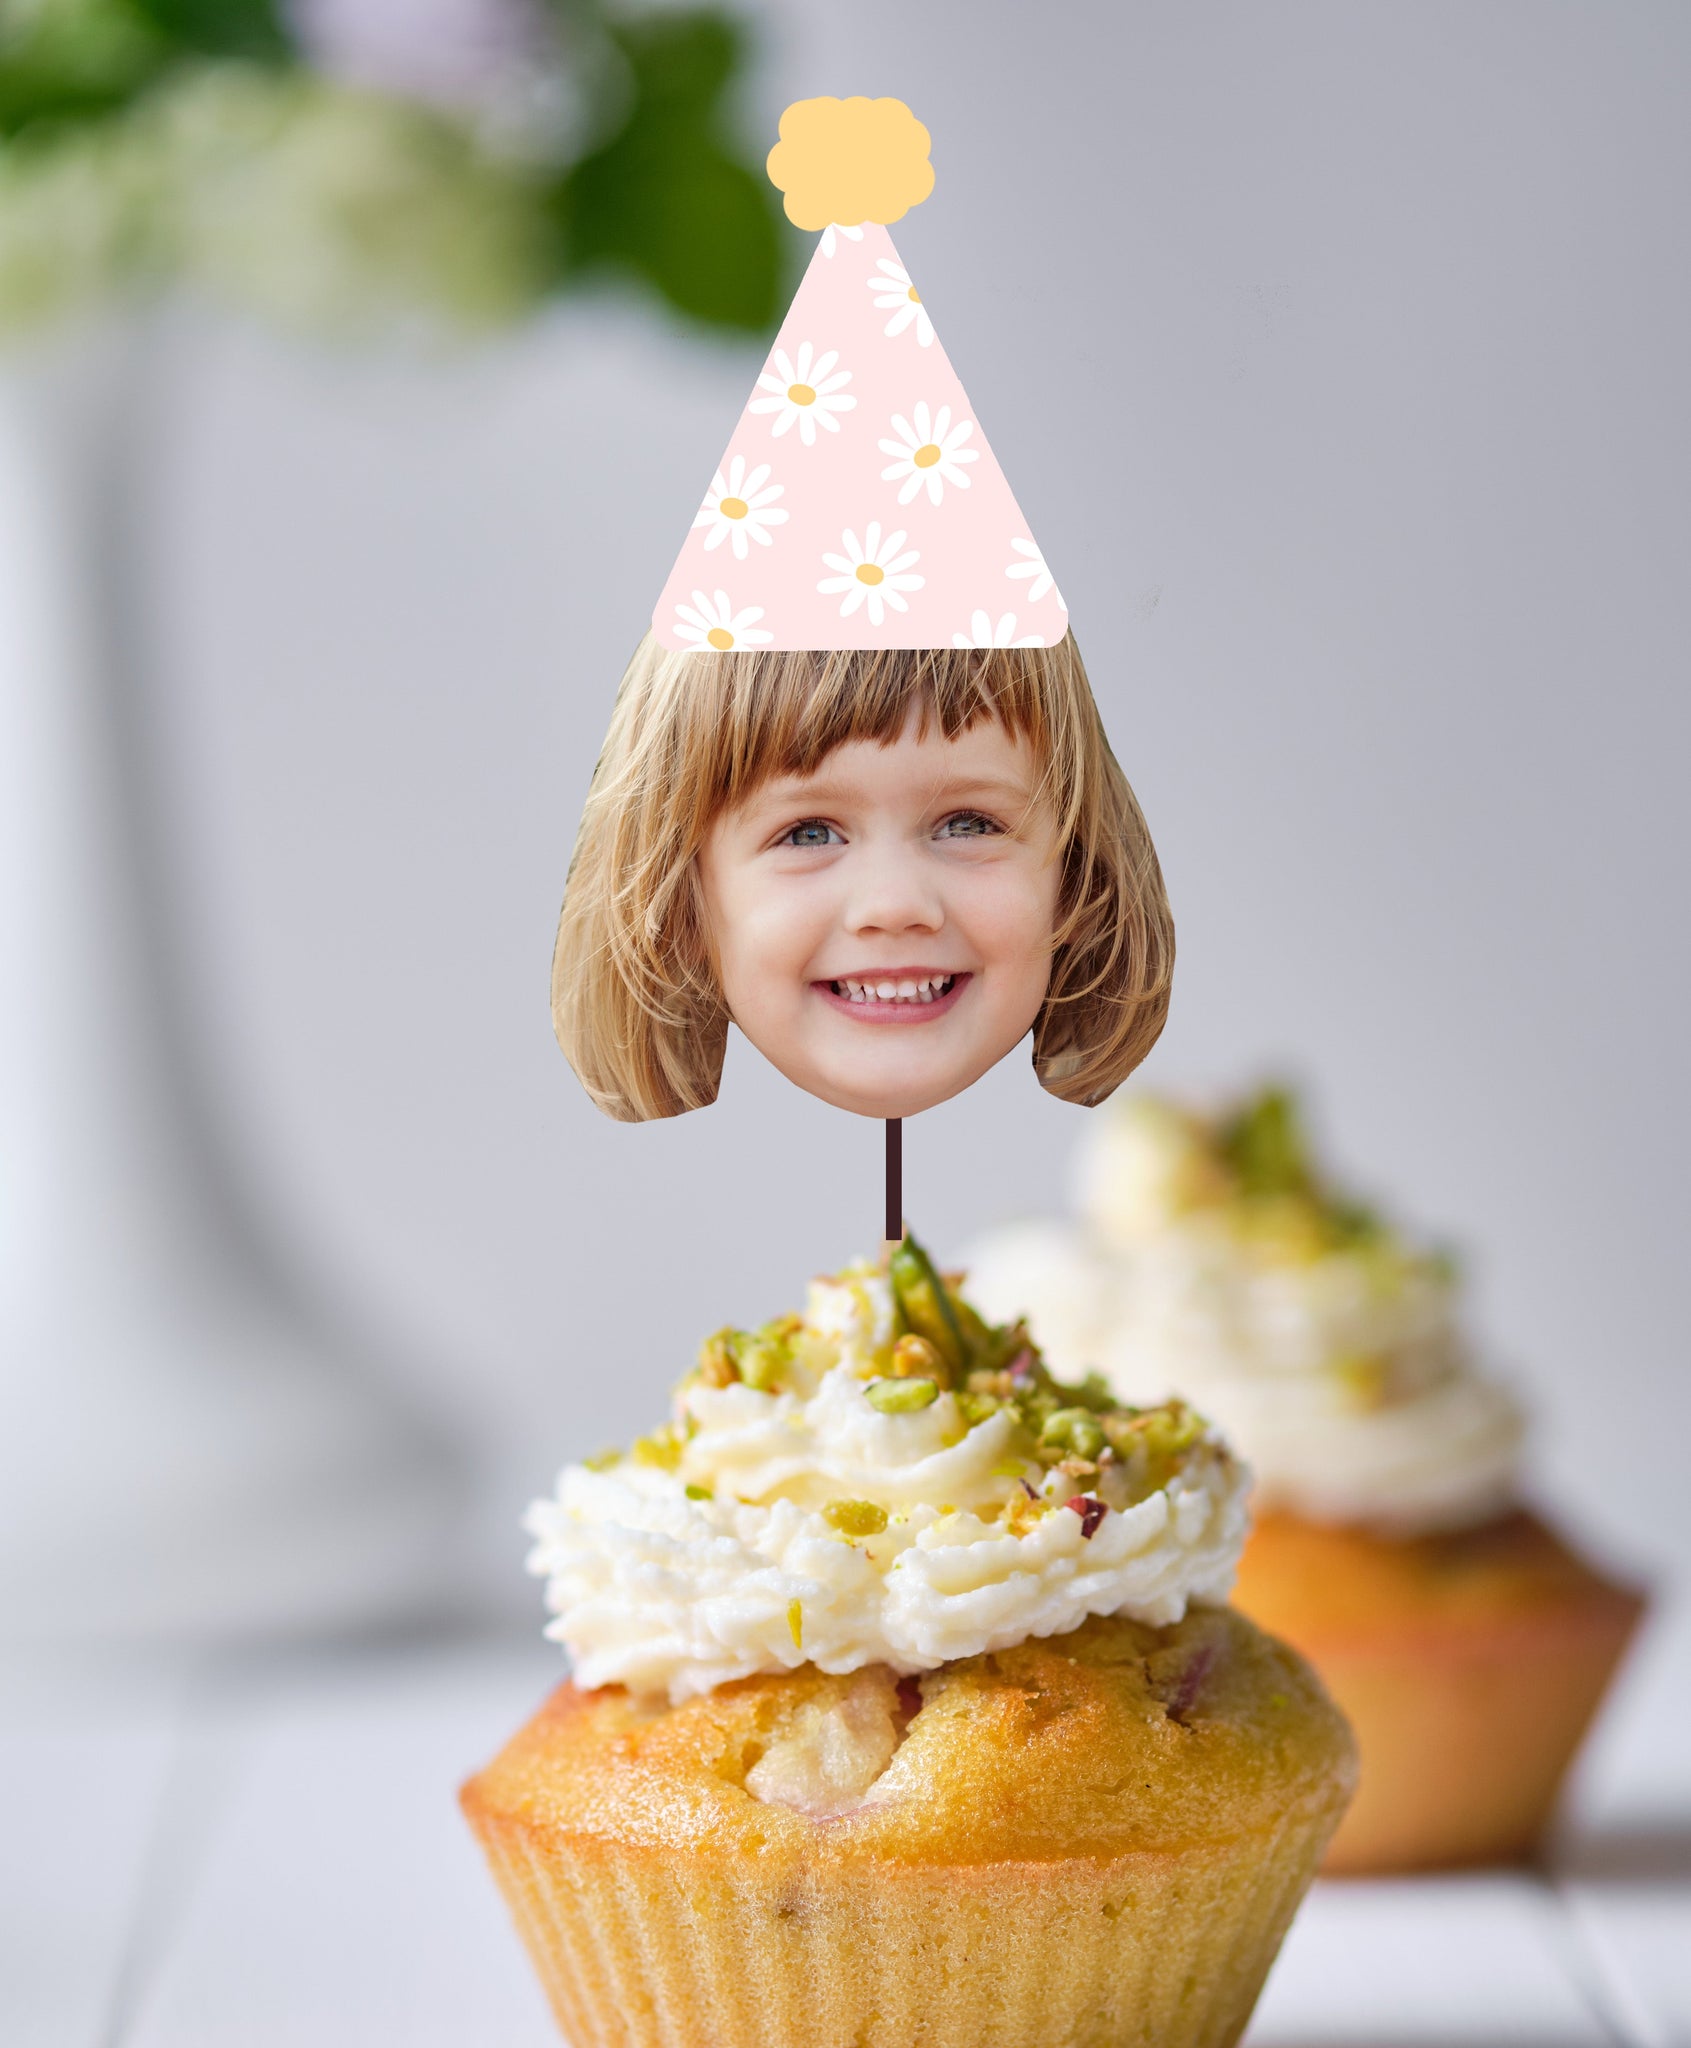 Daisy Cupcake Toppers, Daisy Birthday Decorations, Daisy Birthday Party Decor, Retro Daisy Cupcake Toppers, Daisy Cake Toppers, Printable